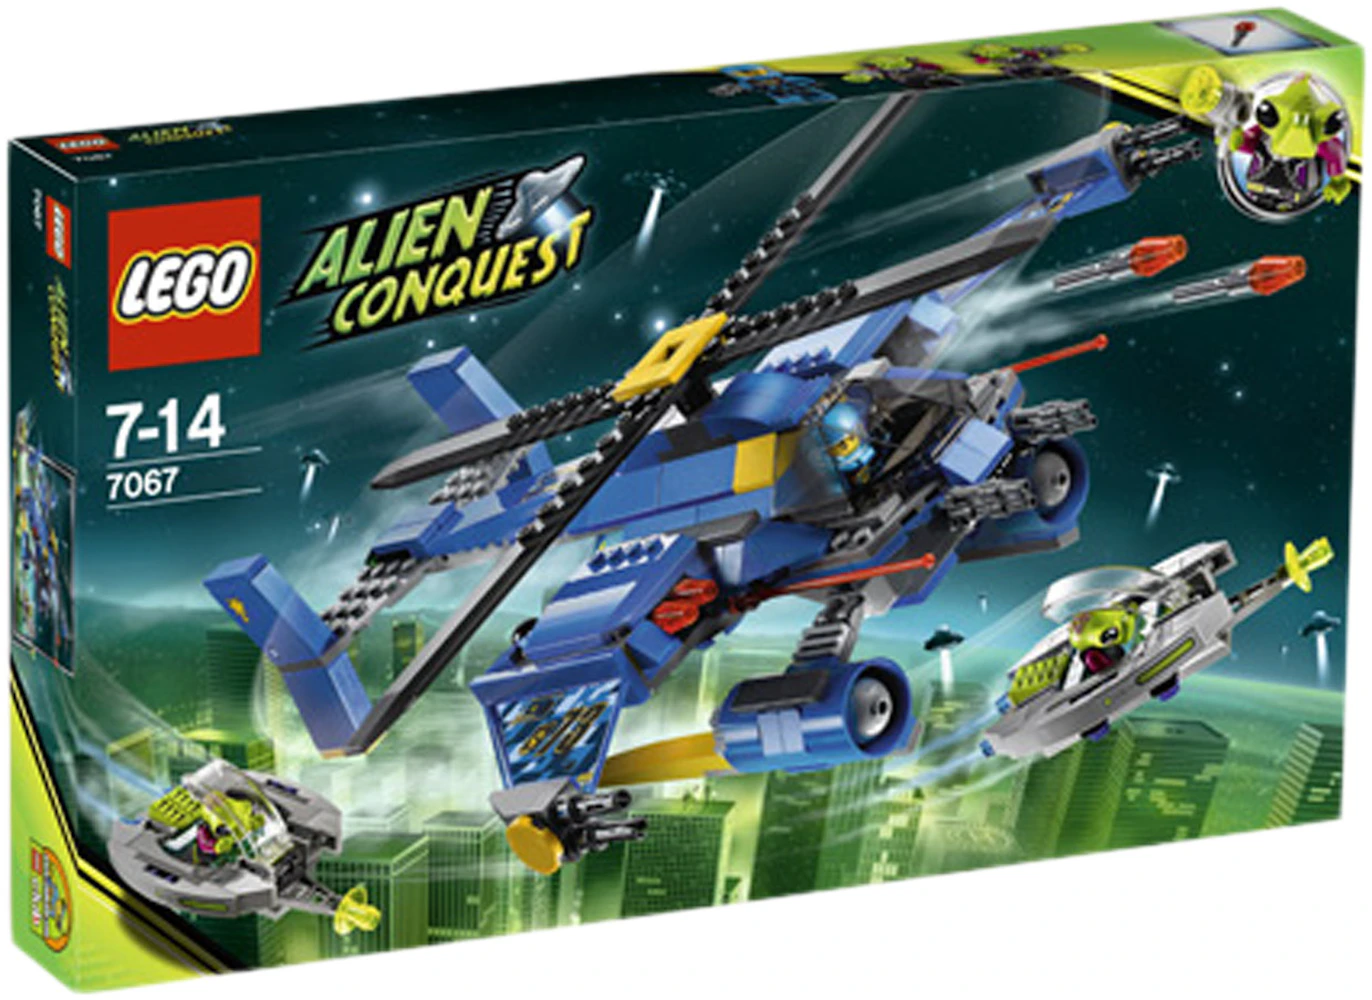 LEGO Jet-Copter Encounter Set 7067 - US